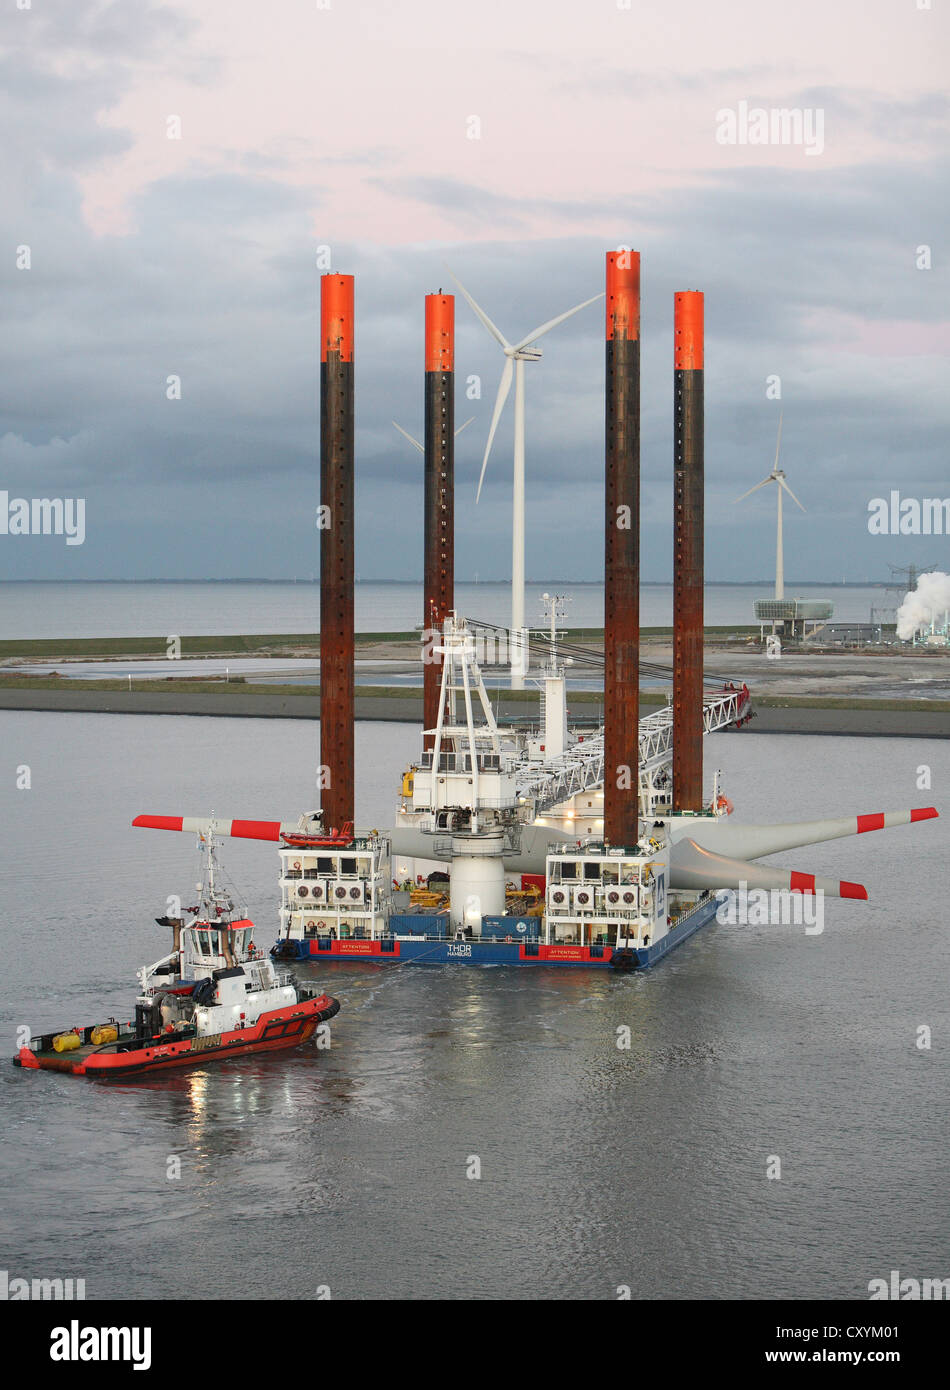 Schiff verwendet für der Bau von Offshore-Windparks Eemshaven tragen eine Wind-Turbine-Kopf verlässt, geleitet von Schleppboote. Stockfoto